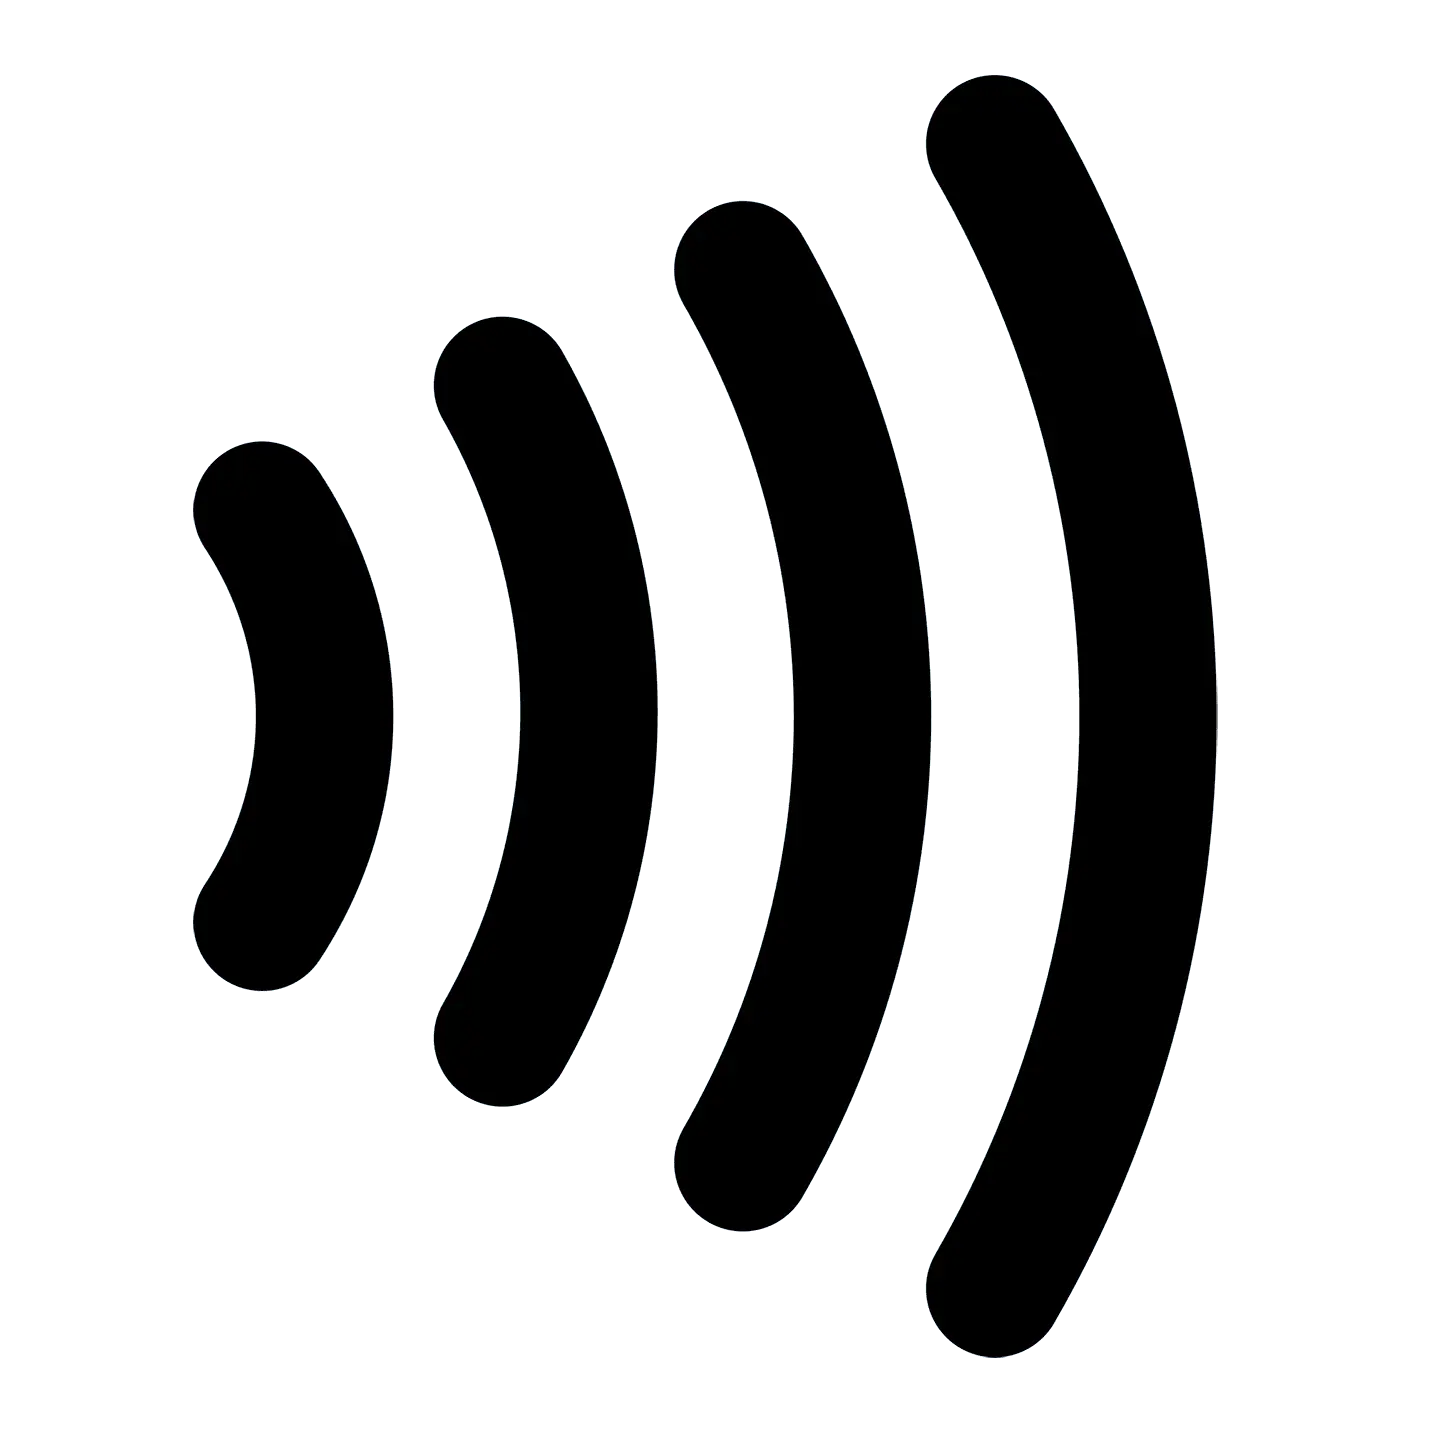 Transparent hinterlegtes Logo für das kontaktloses Bezahlen bestehend aus vier Wellen.